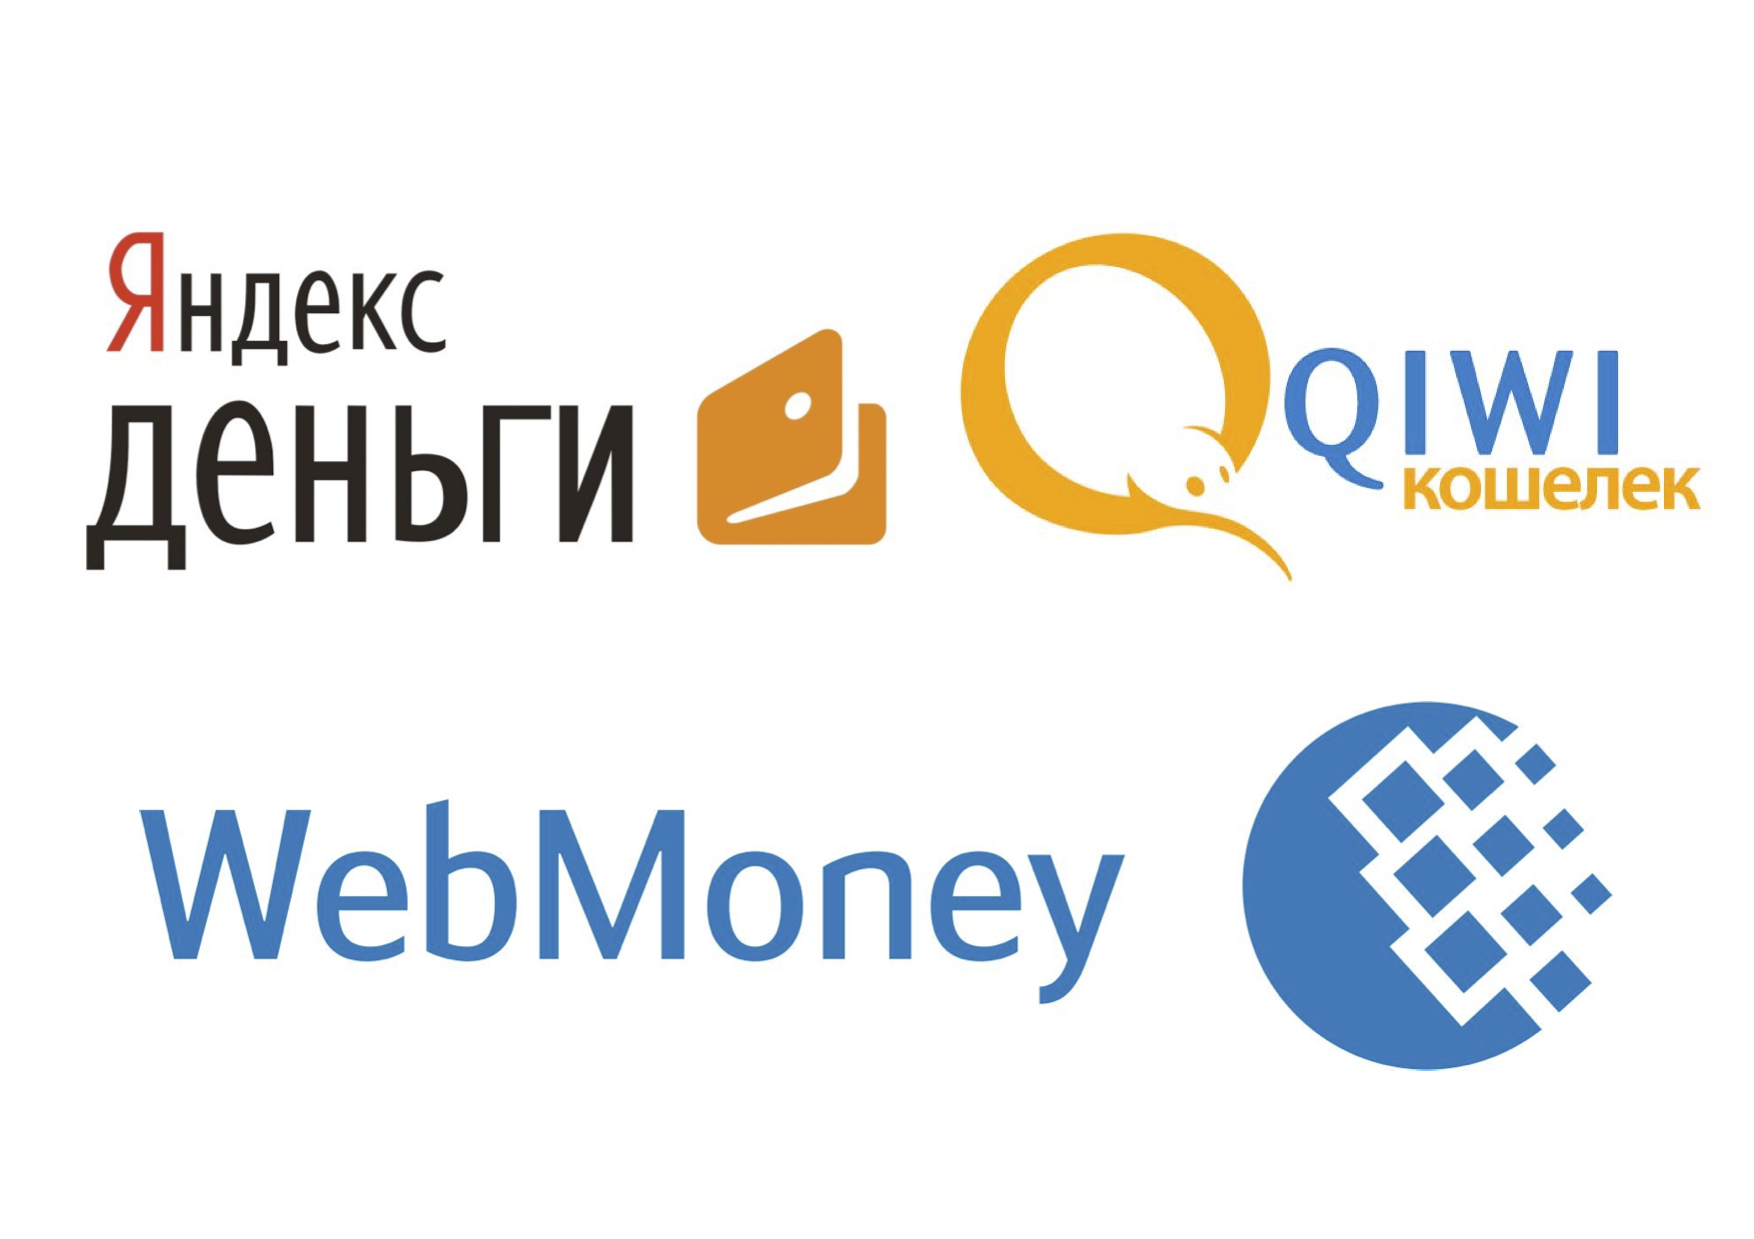 Ваша самая любимая платежная система (Webmoney, QIWI.Кошелек, Яндекс.Деньги)